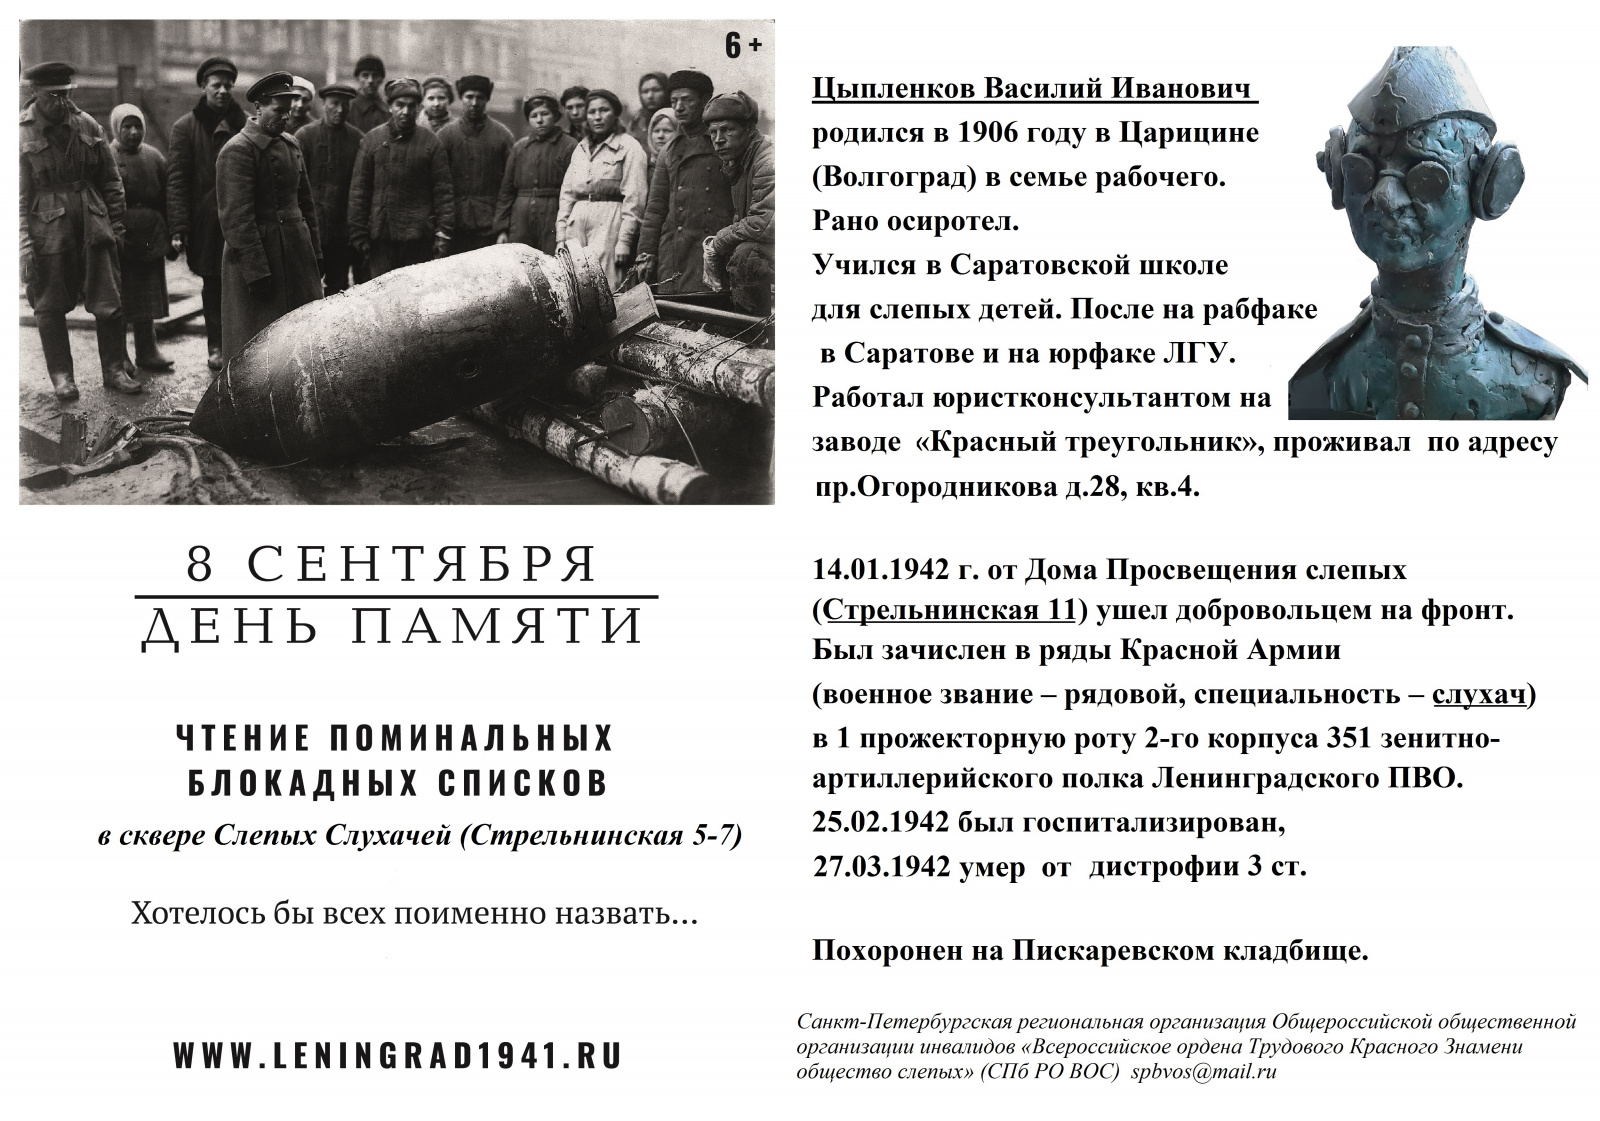 Приглашаем принять участие в акции, приуроченной ко Дню Памяти жертв блокады Ленинграда 